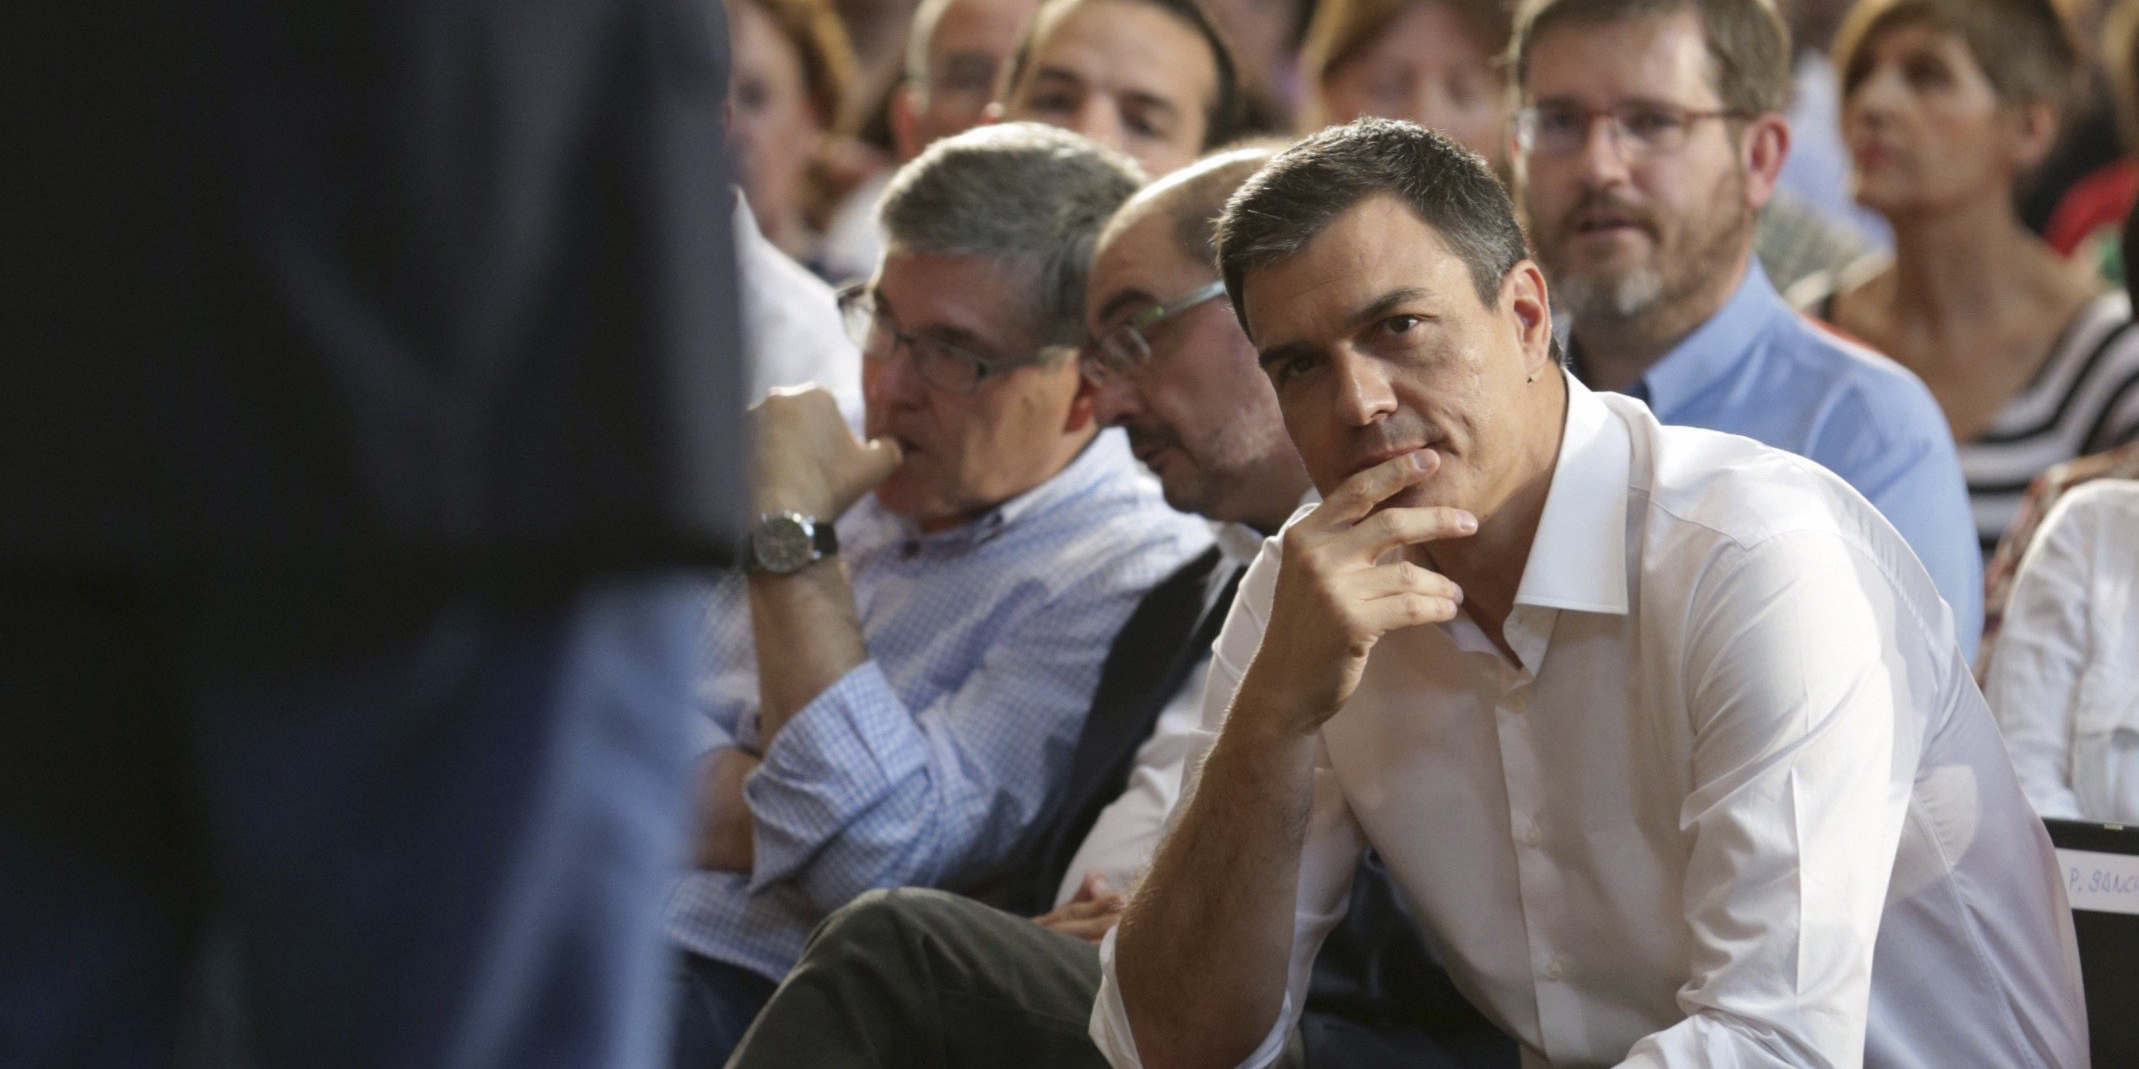 El candidato del PSOE a la Presidencia del Gobierno Pedro Sánchez, que participó en el acto central de campaña de su partido hoy en Zaragoza, escucha una de las intervenciones.